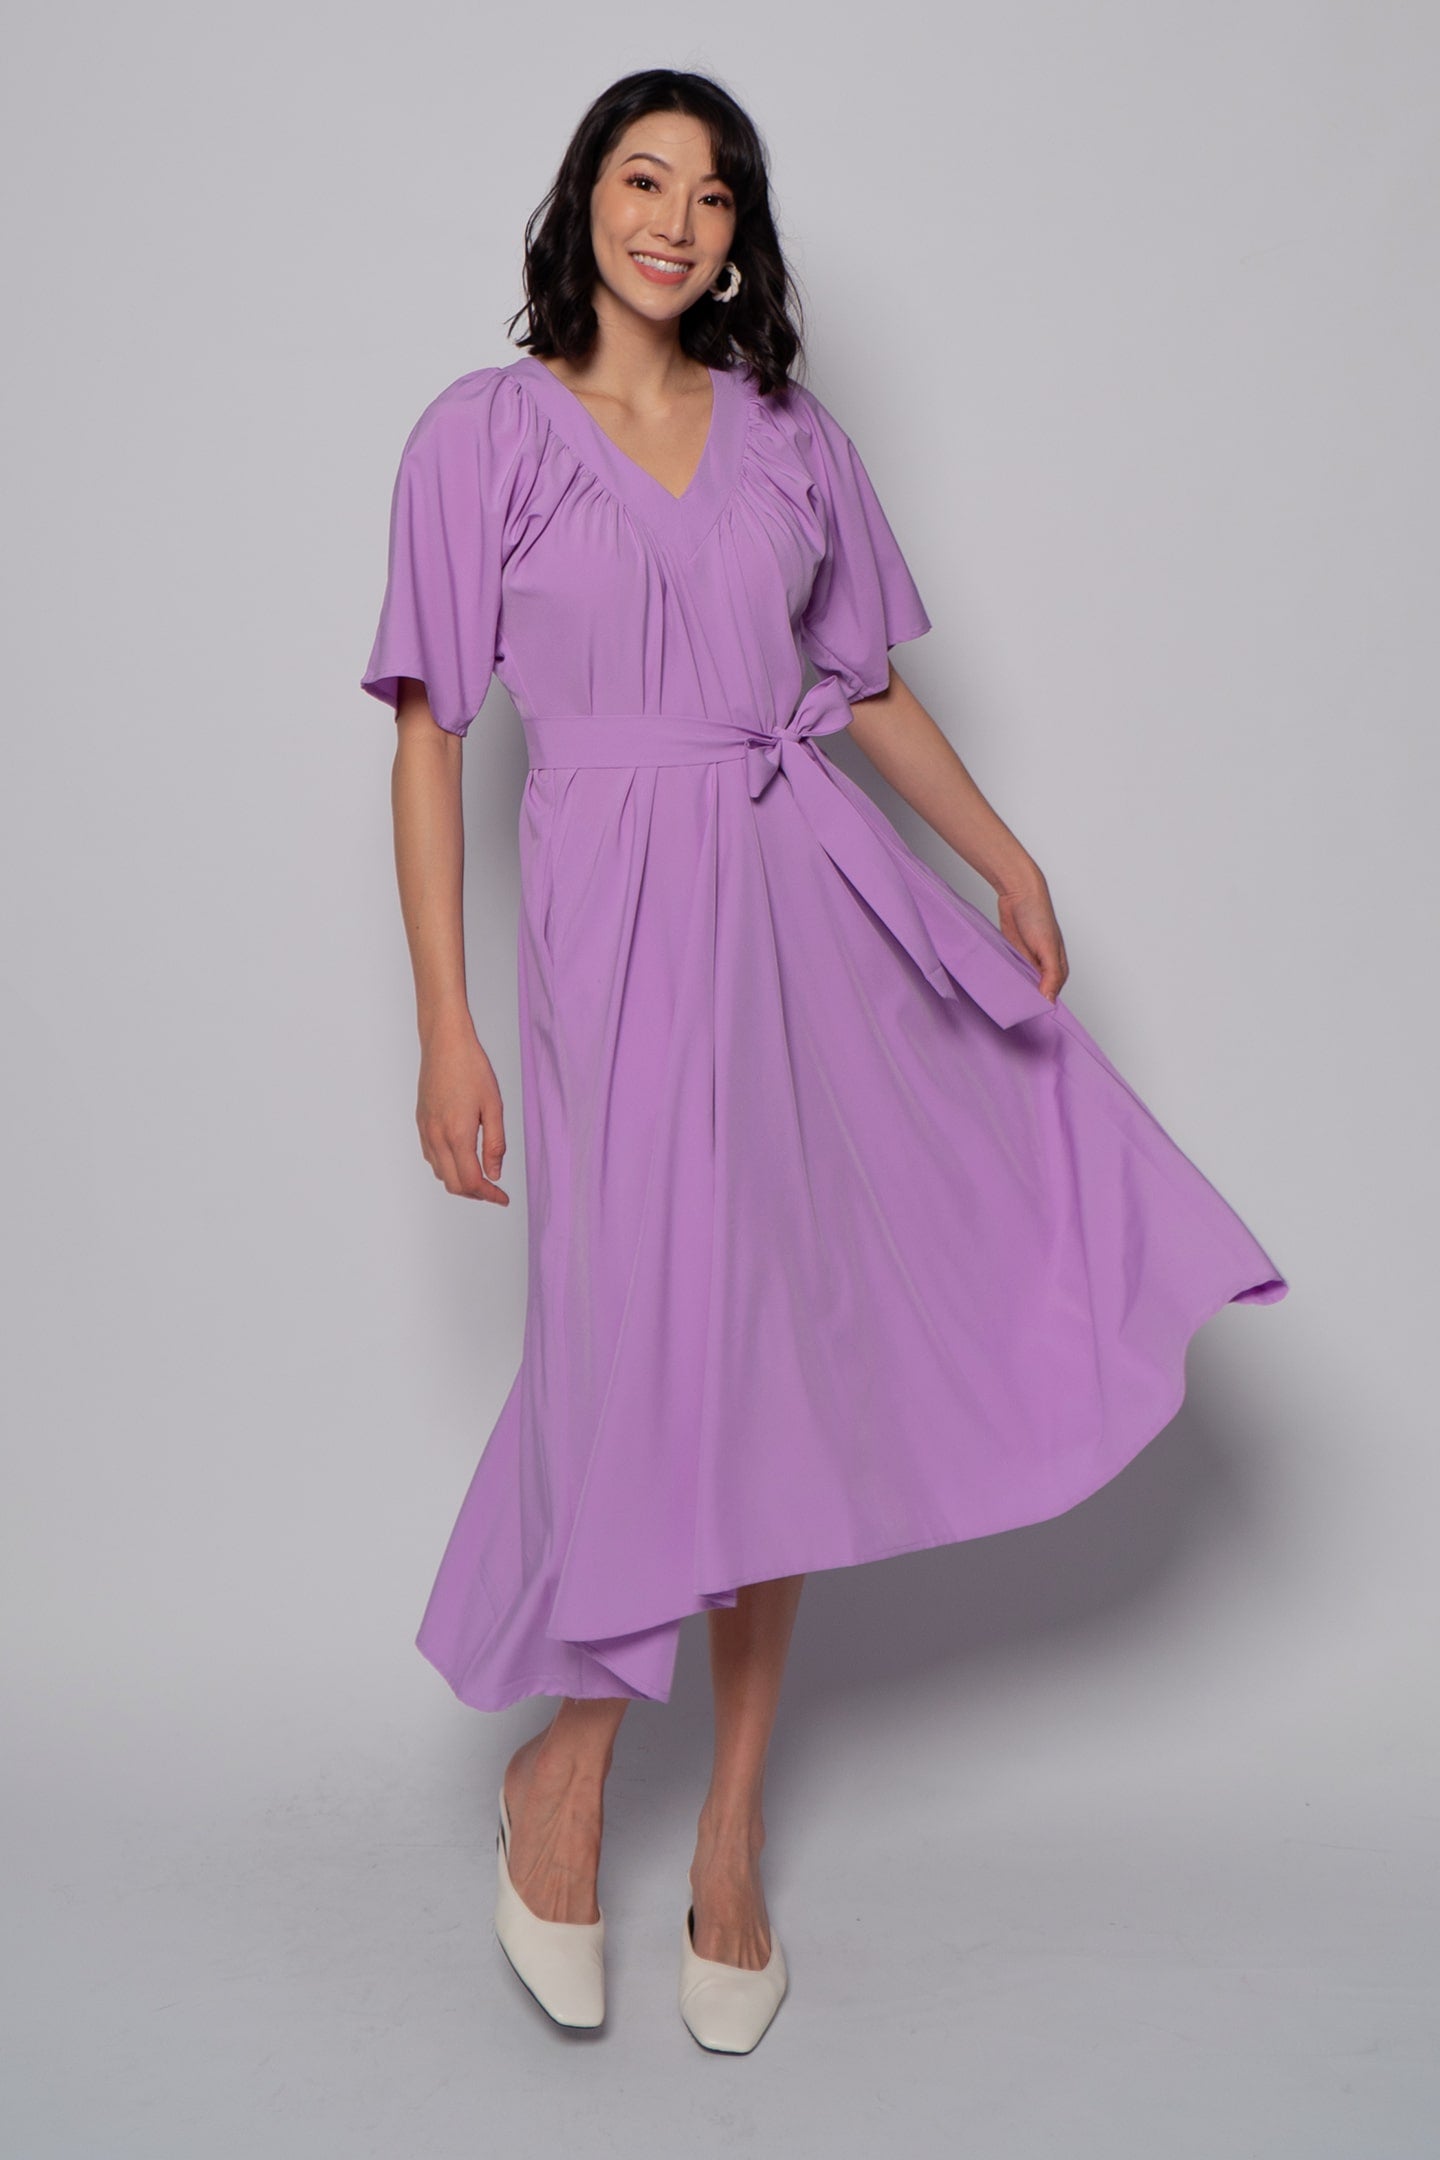 Whitney V Dress in Plain Lavender